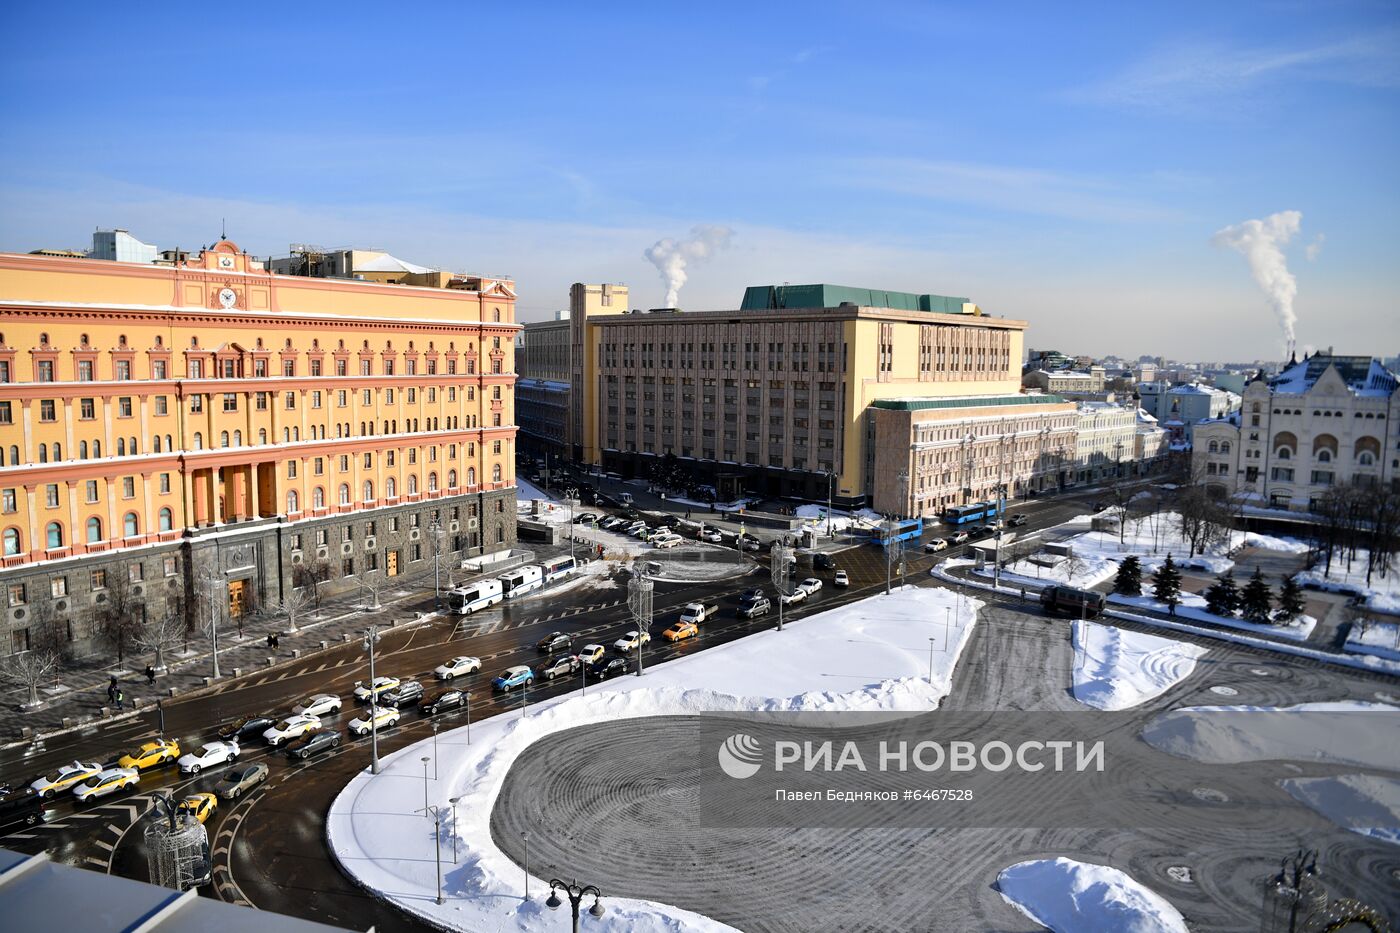 Лубянская площадь в Москве